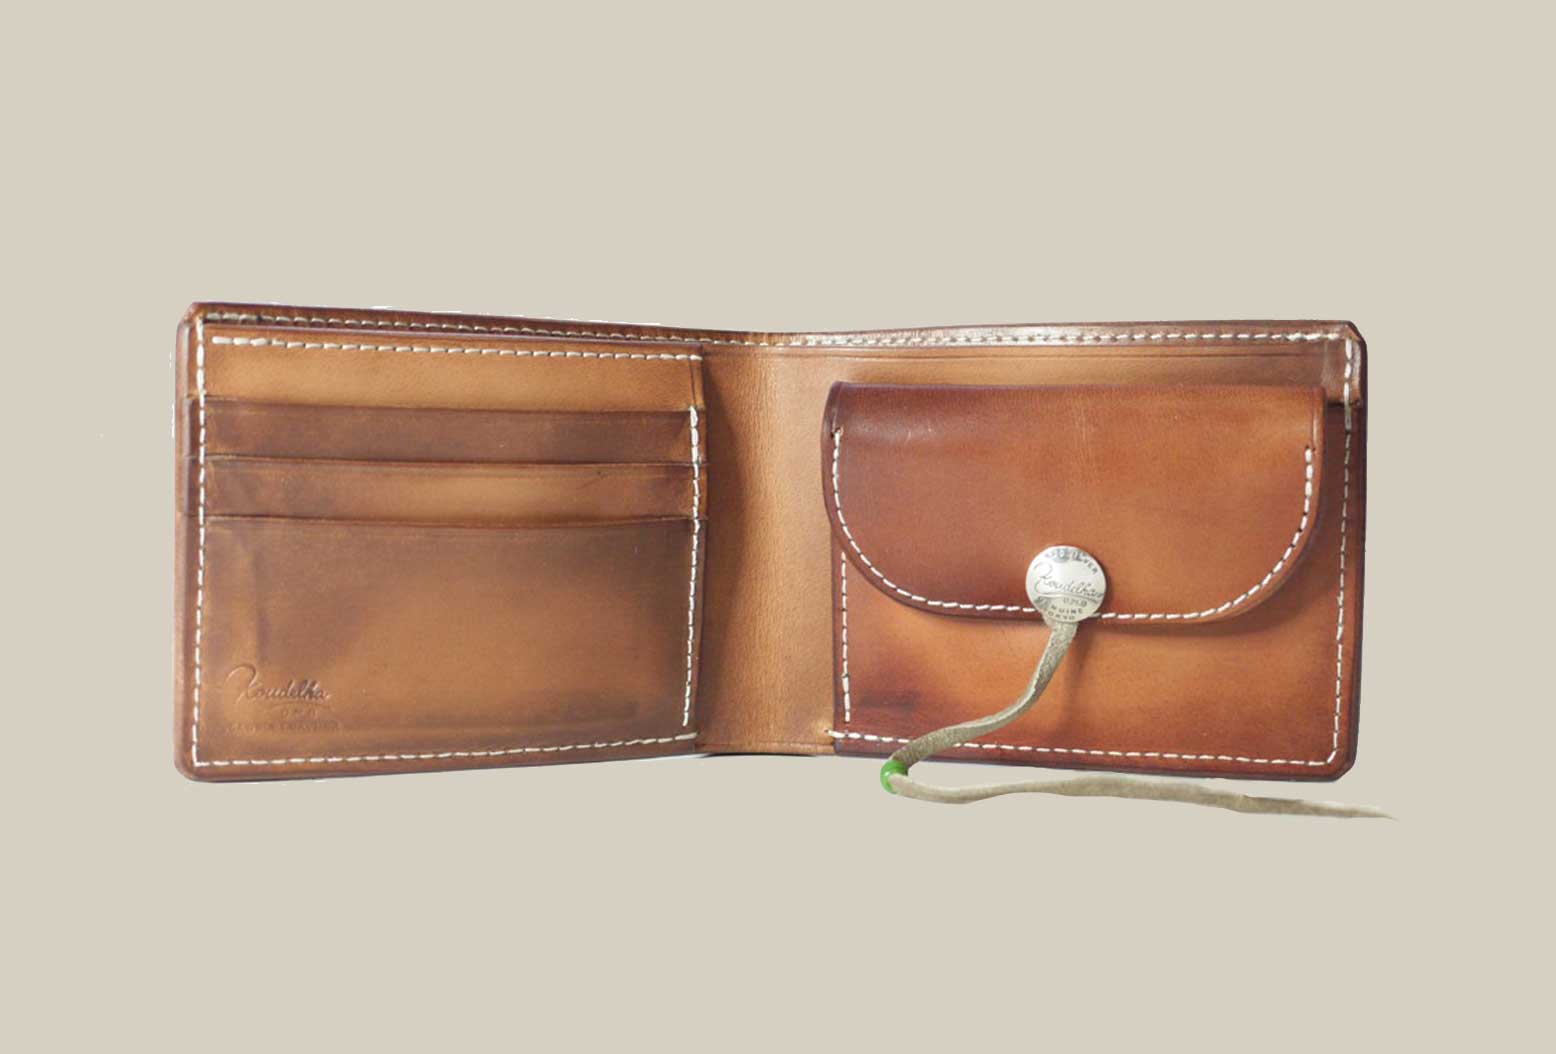 【Koudlka Leather(クーデルカ レザー)】【b-1a】ビルフォード 2つ折り財布